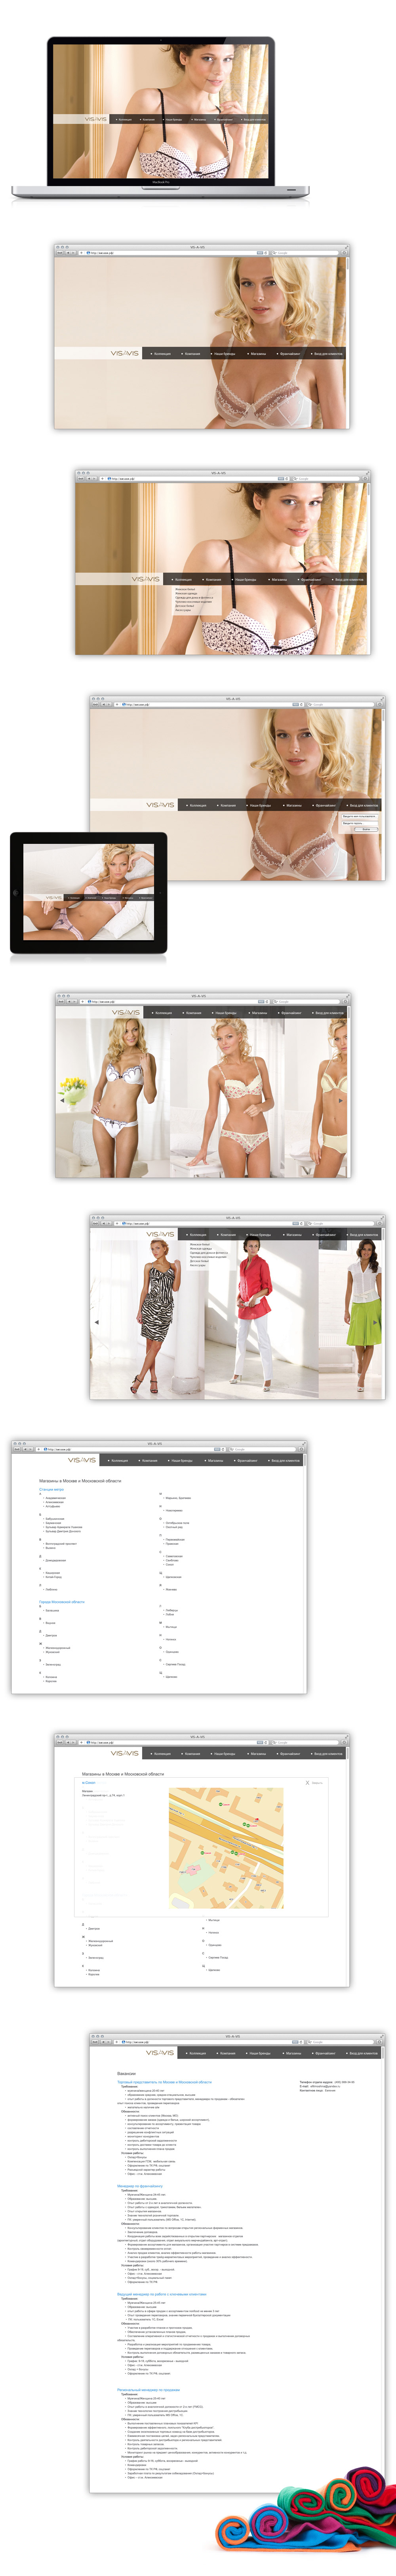 Интернет каталог женской одежды и белья VIS-A-VIS